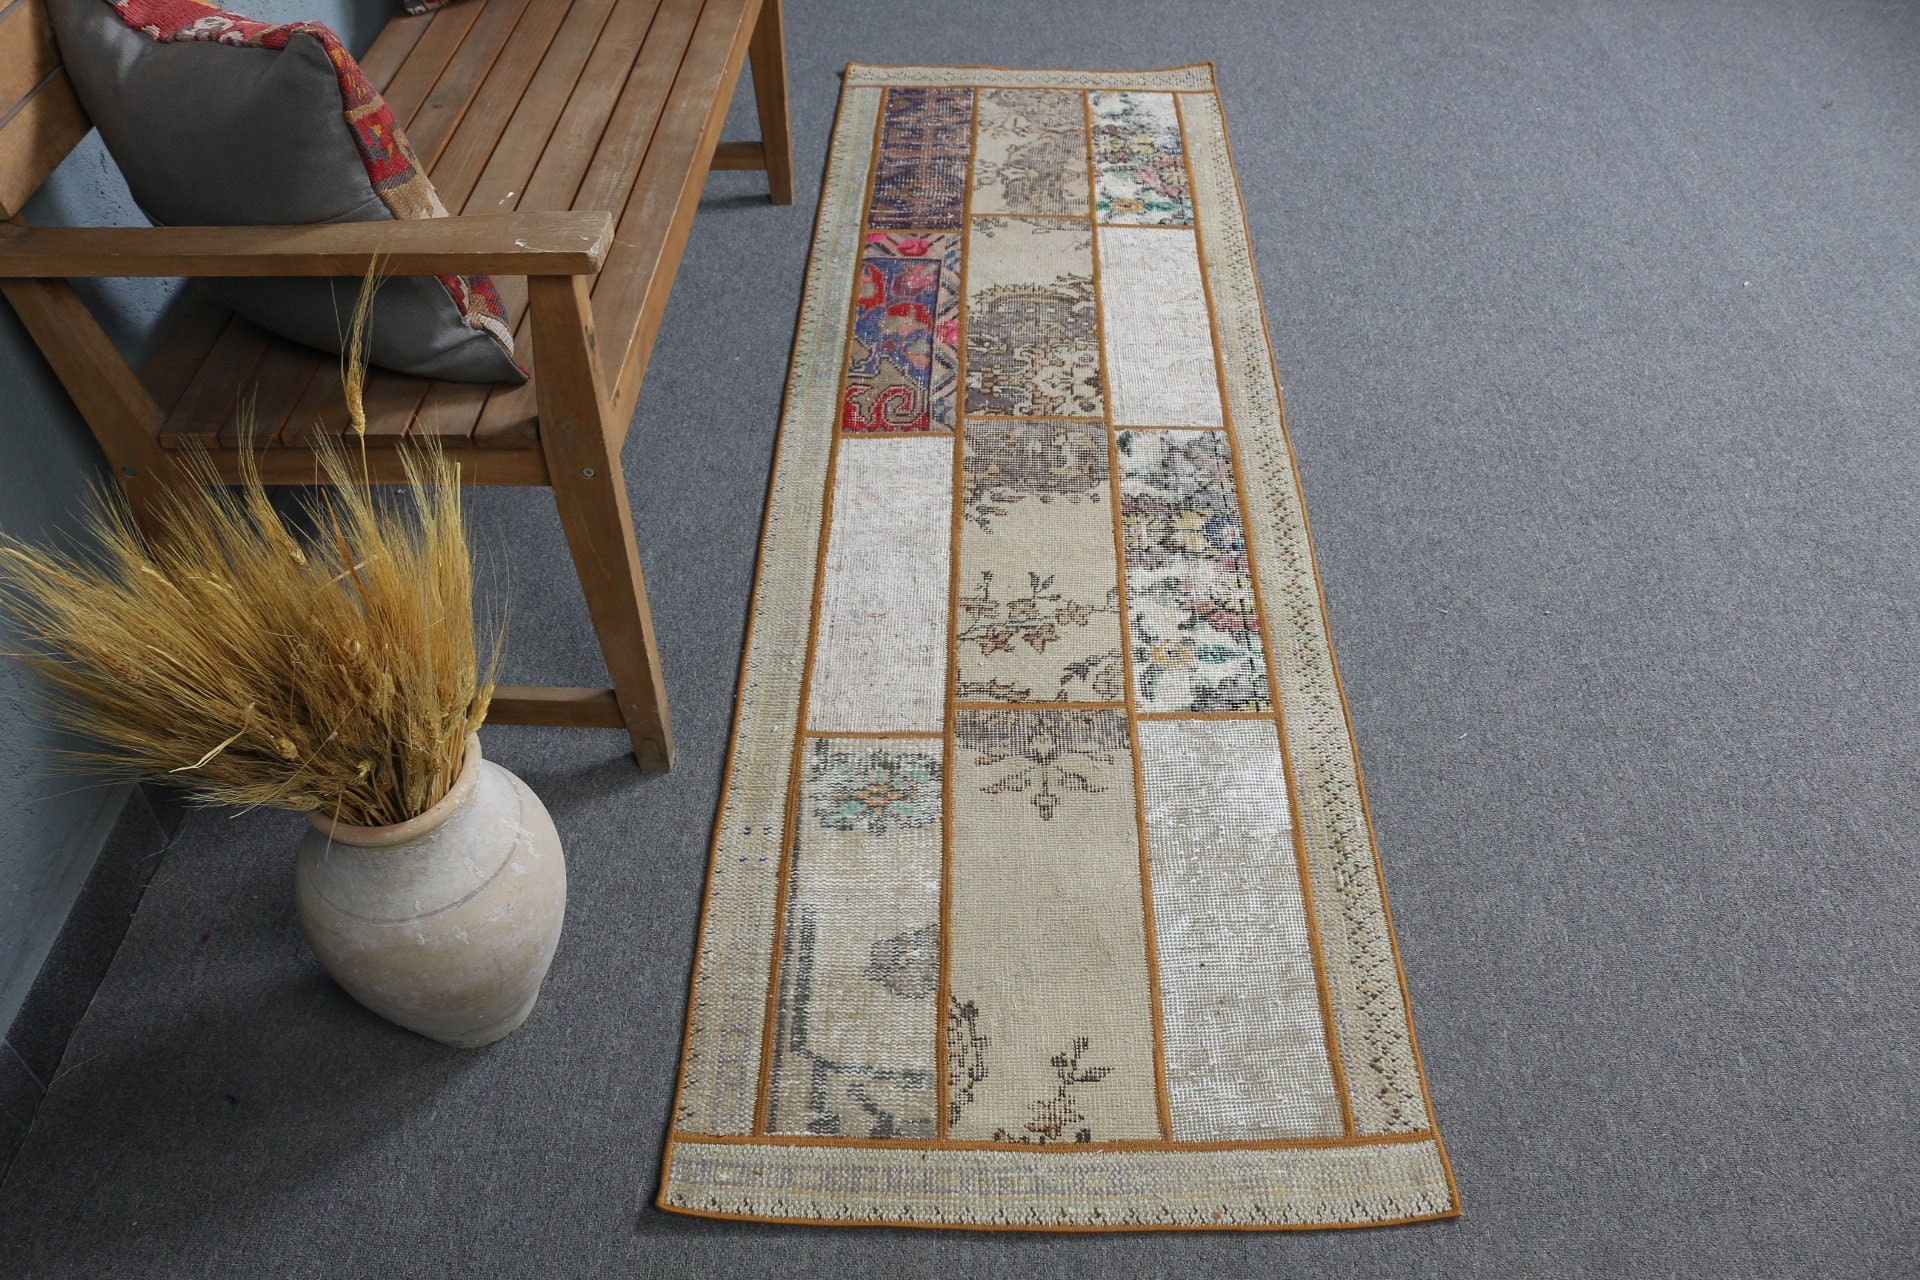 Pastel Rugs, Corridor Rugs, Anatolian Rugs, Vintage Rug, 2.2x7.2 ft Runner Rug, Turkish Rugs, Floor Rug, Beige Home Decor Rug, Hallway Rugs